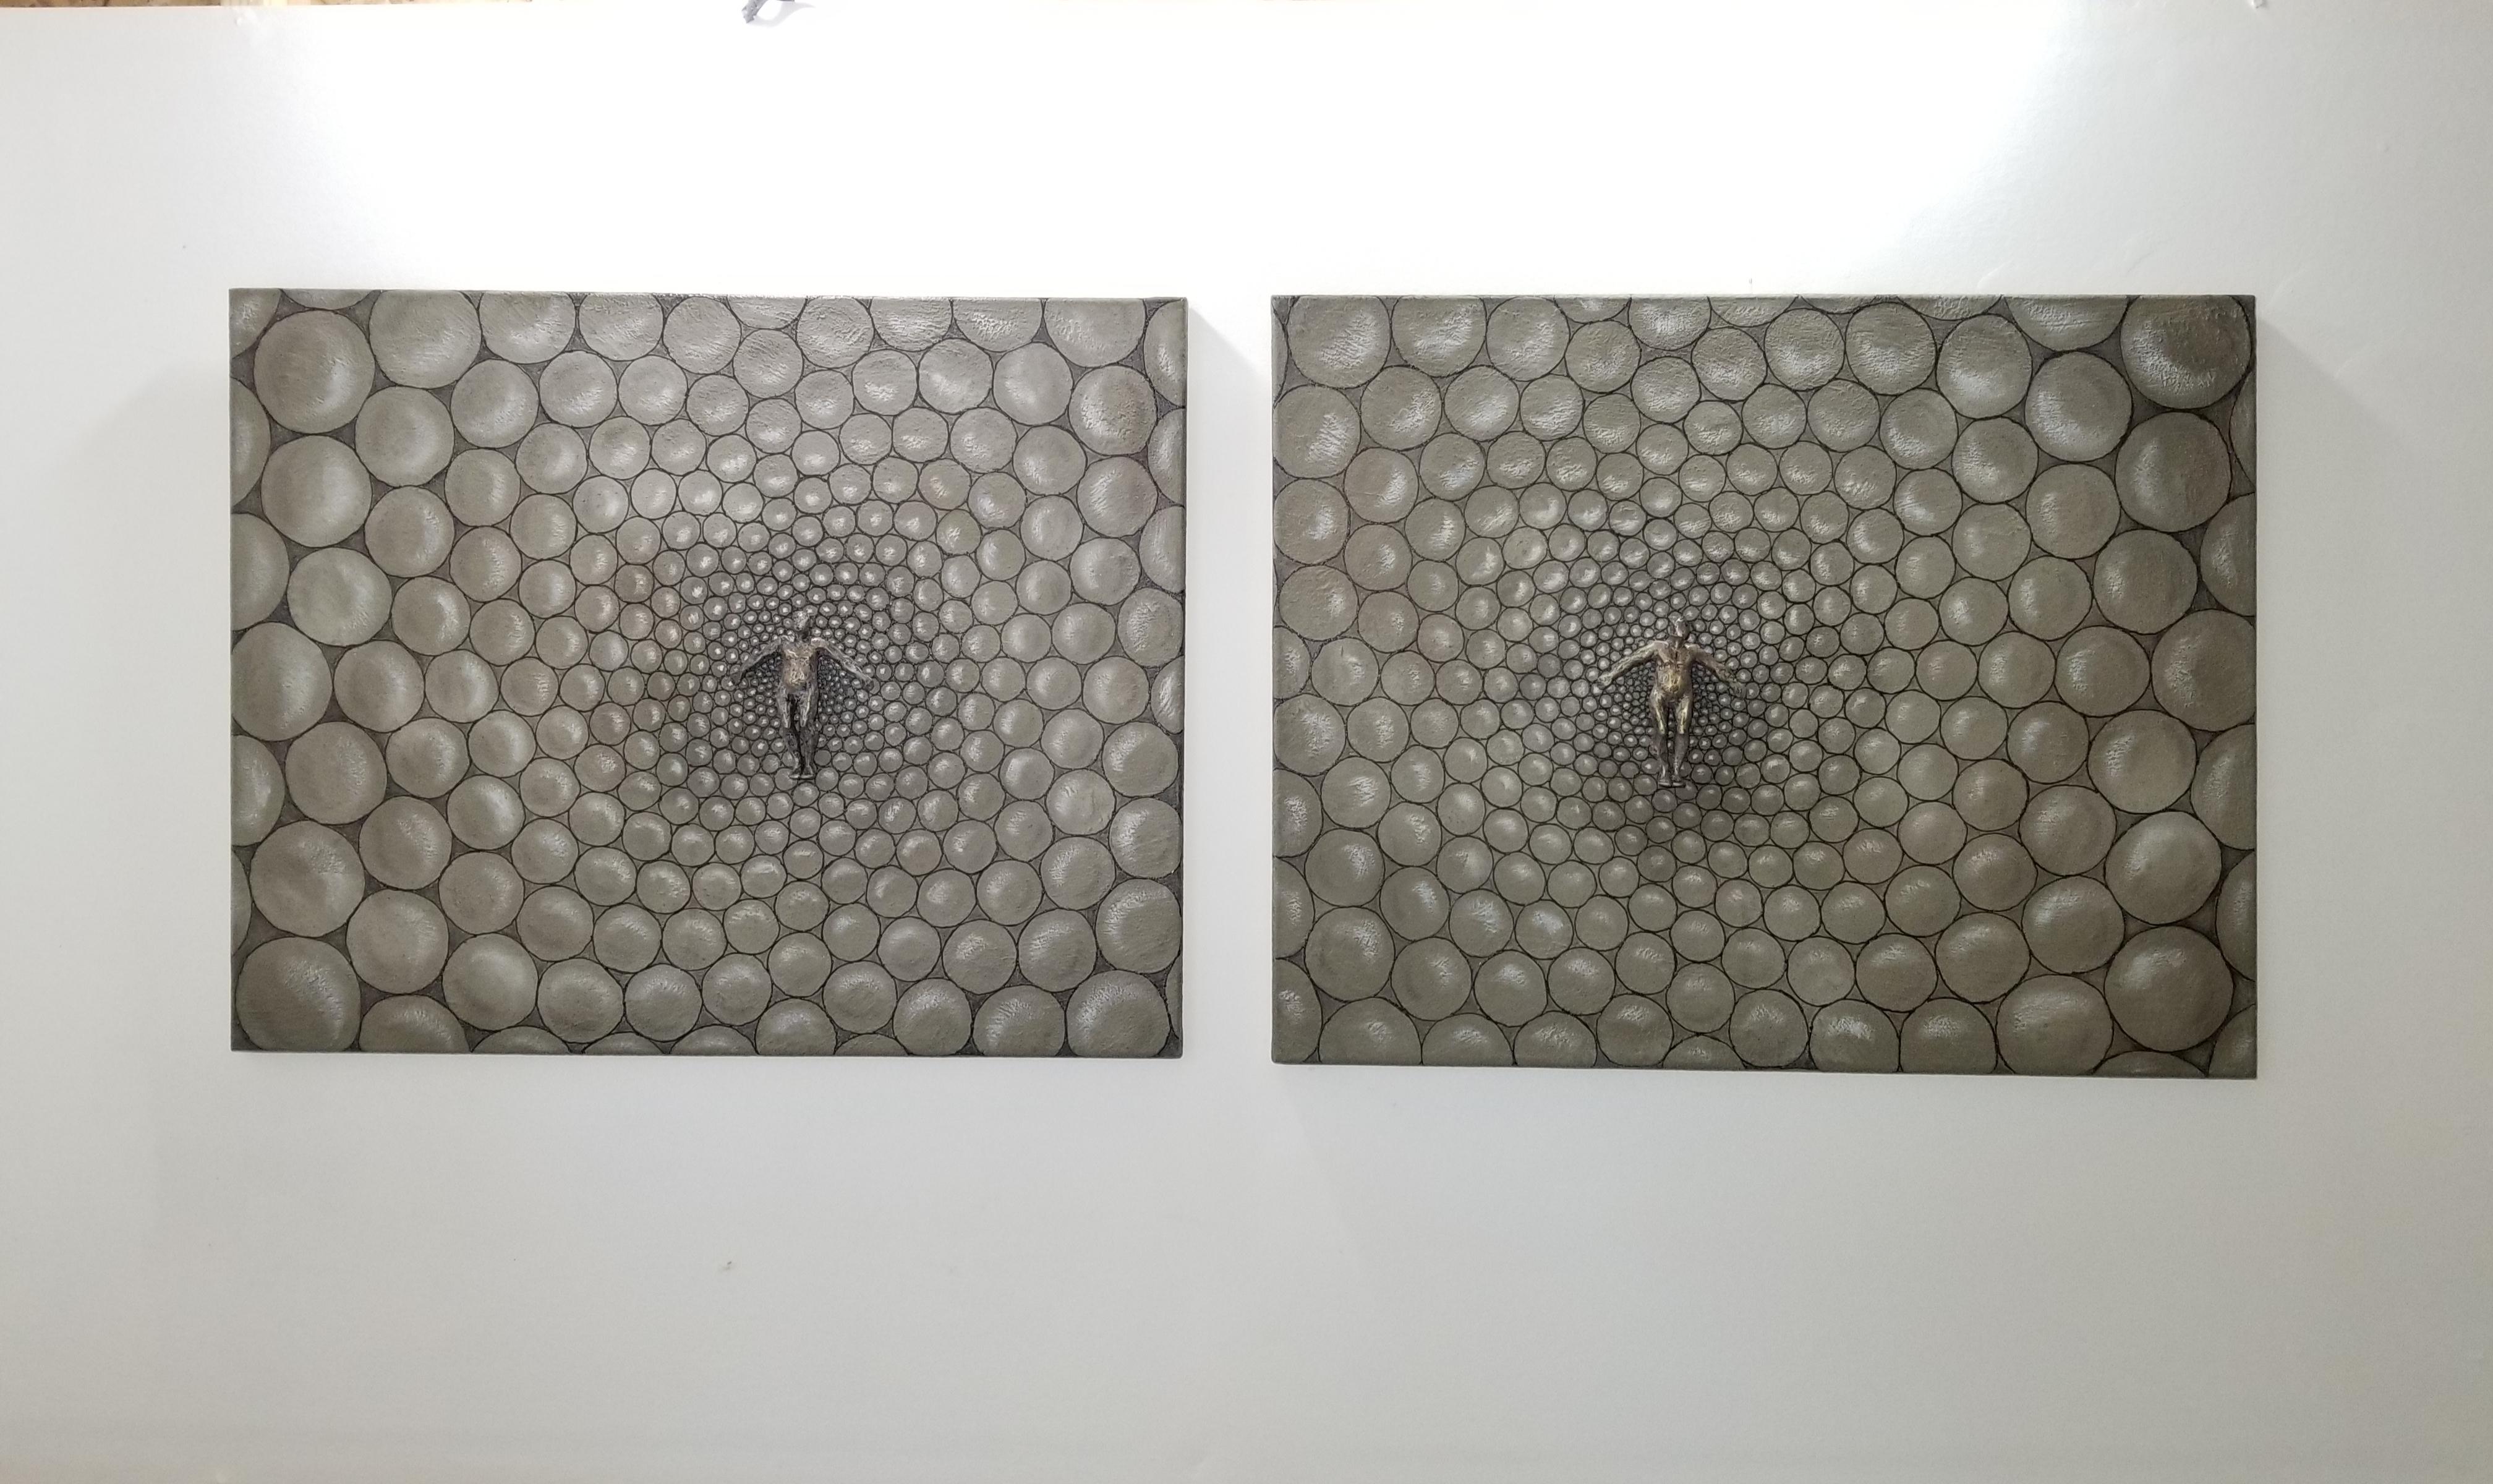 <p>Commentaires de l'artiste<br>L'artiste Yelitza Diaz présente un diptyque avec deux figures centrales sur chaque toile. Yelitza dessine des motifs circulaires autour d'eux pour projeter la sensation de volume. Une représentation moderne de la